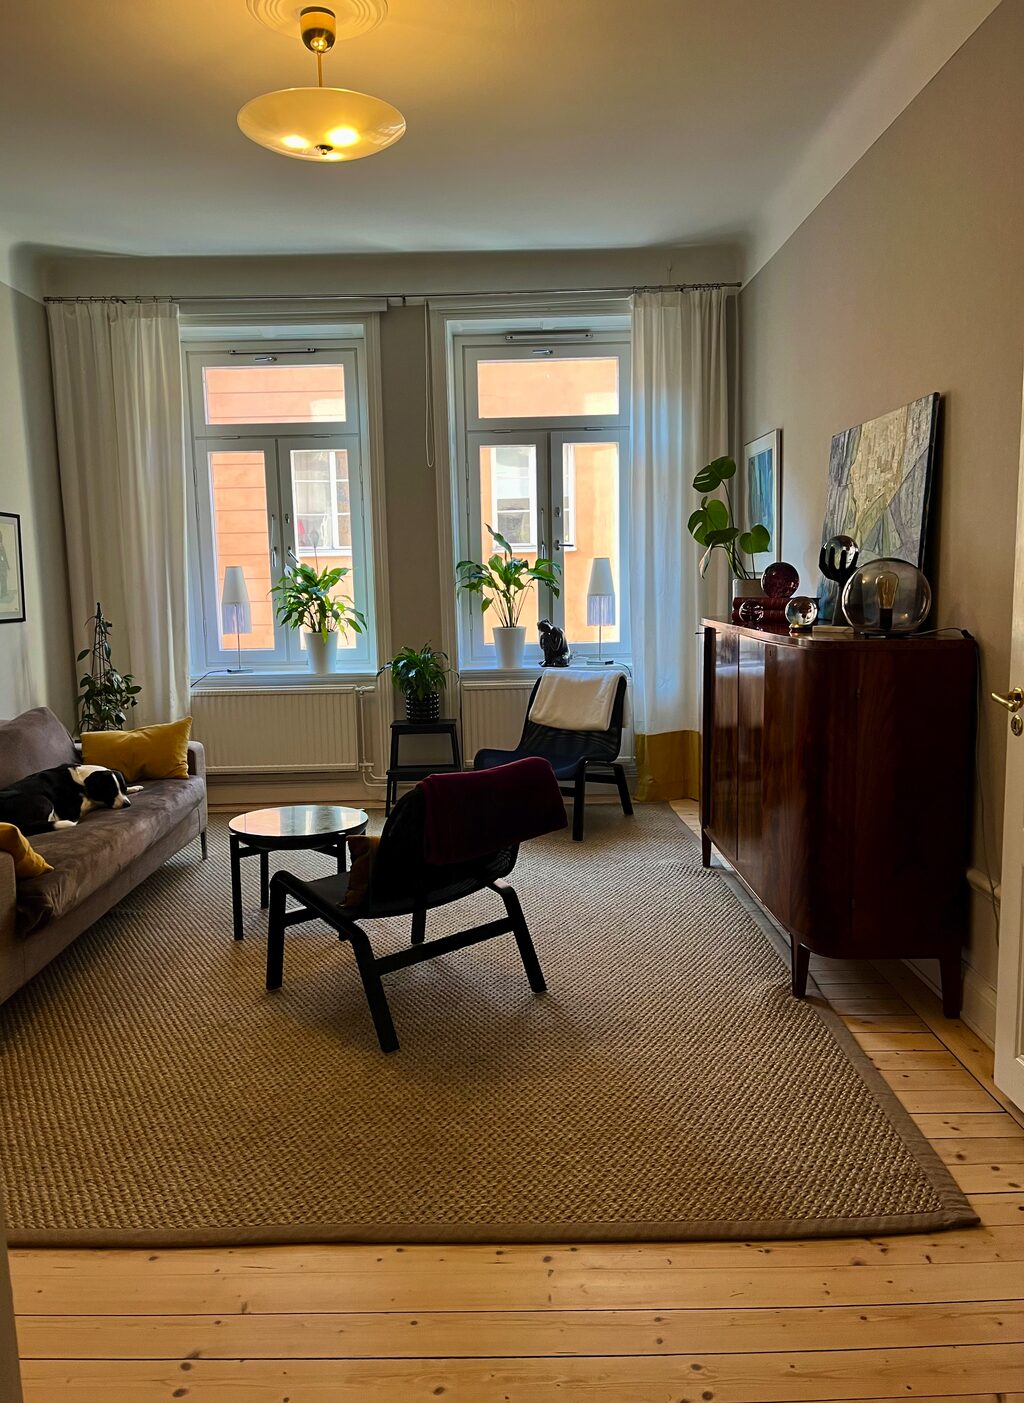 Lägenhetsbyte - Brännkyrkagatan 47